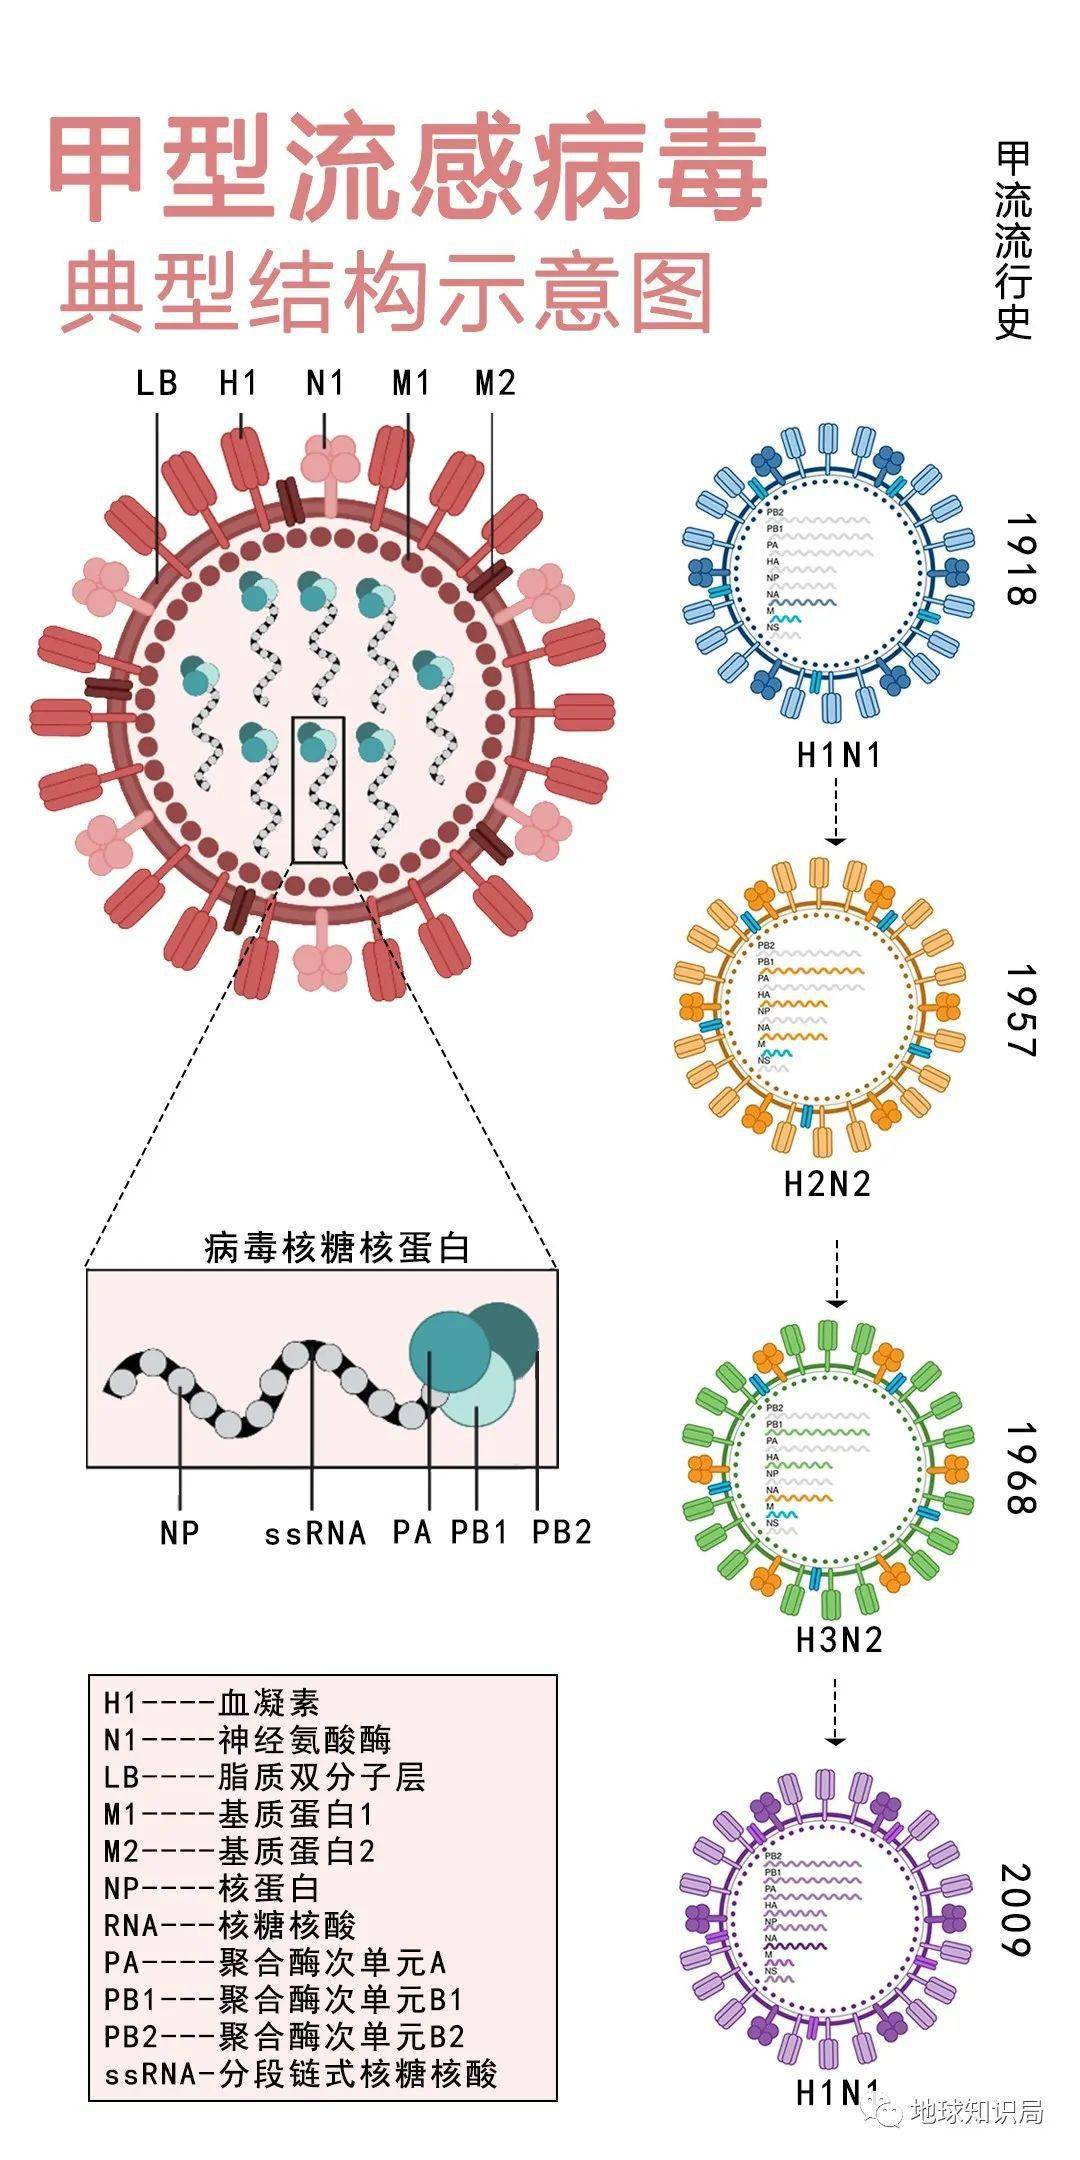 最重要的是,不同亚型的甲流病毒之间可以发生抗原漂变,也就是病毒变异